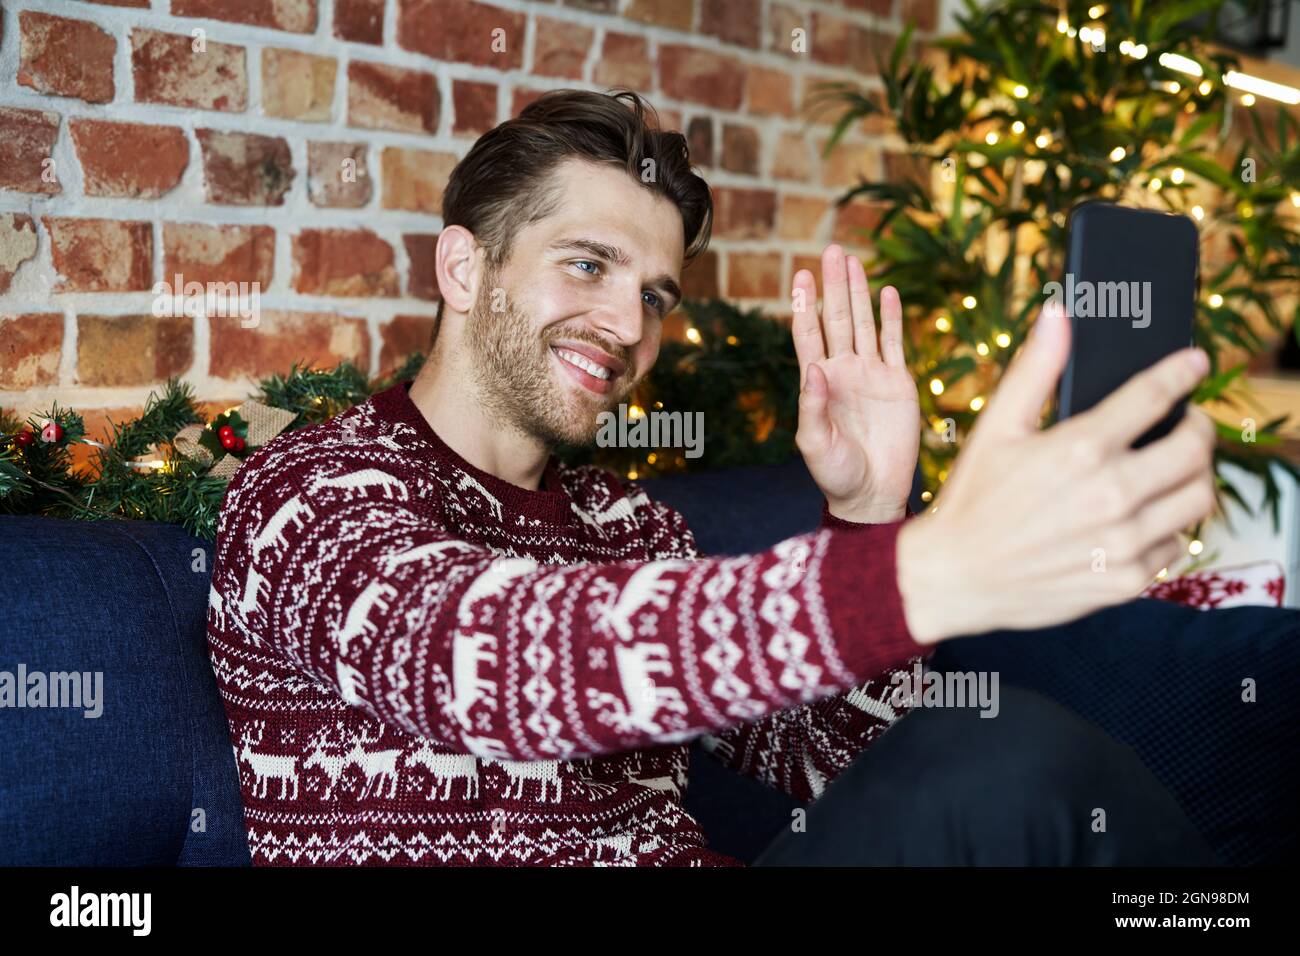 Un homme souriant se fait passer la main pour passer un appel vidéo depuis un téléphone portable à la maison Banque D'Images